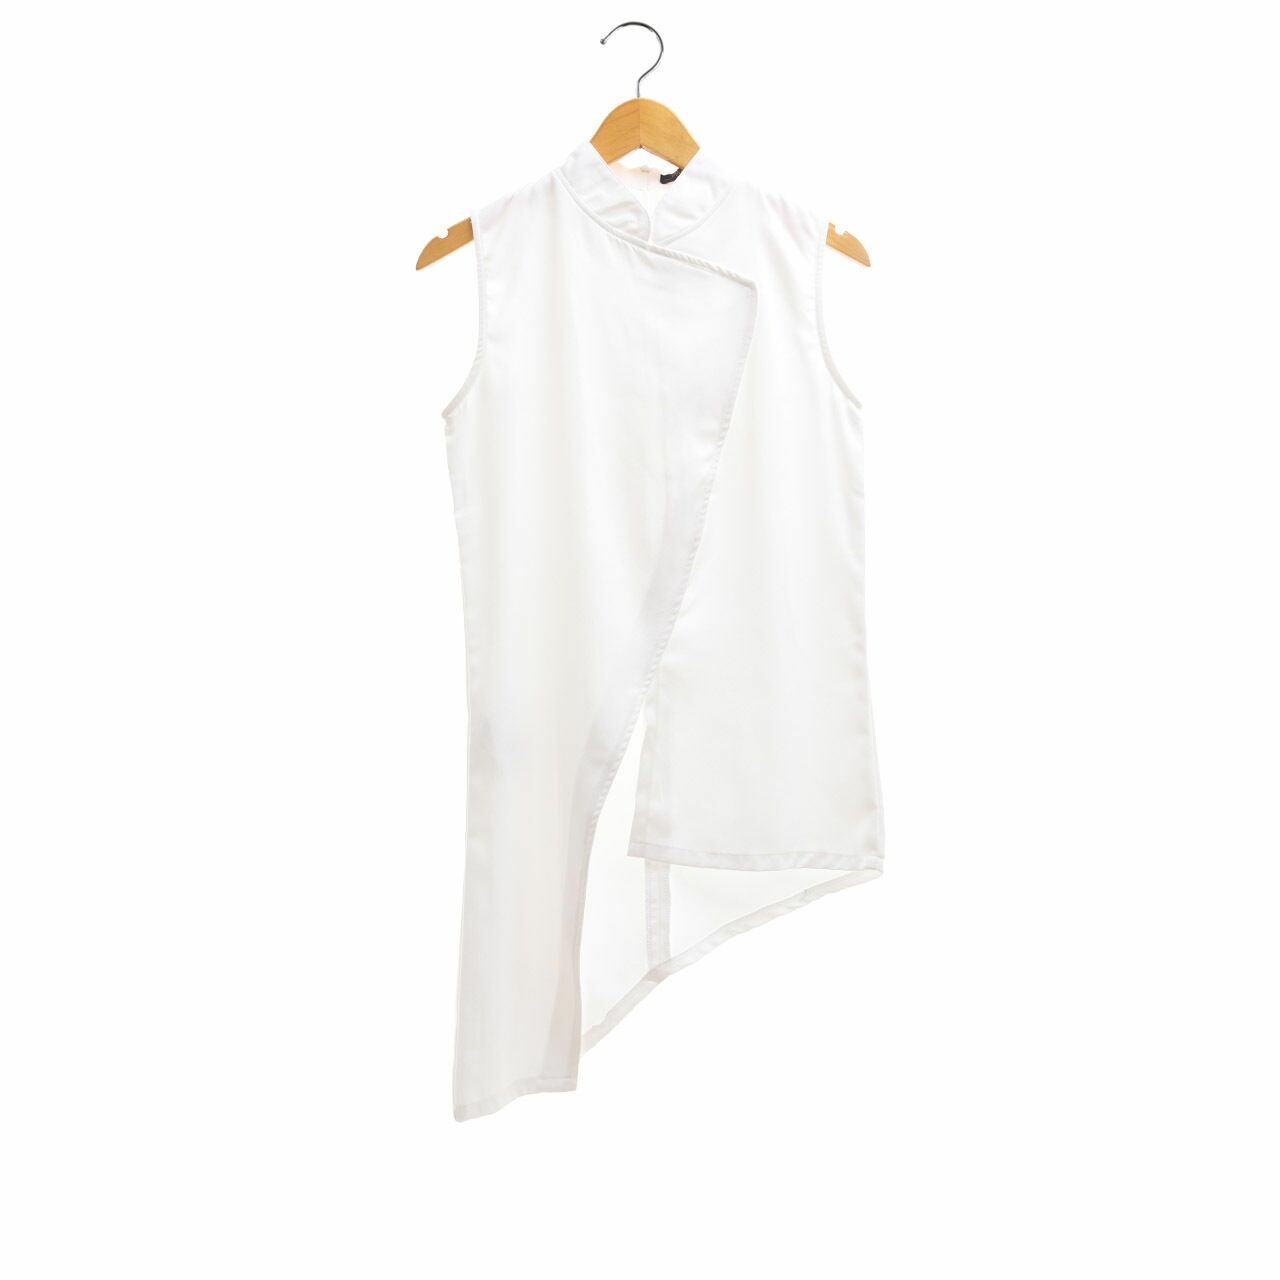 Ralyne Clothing White Asymmetric Sleeveless